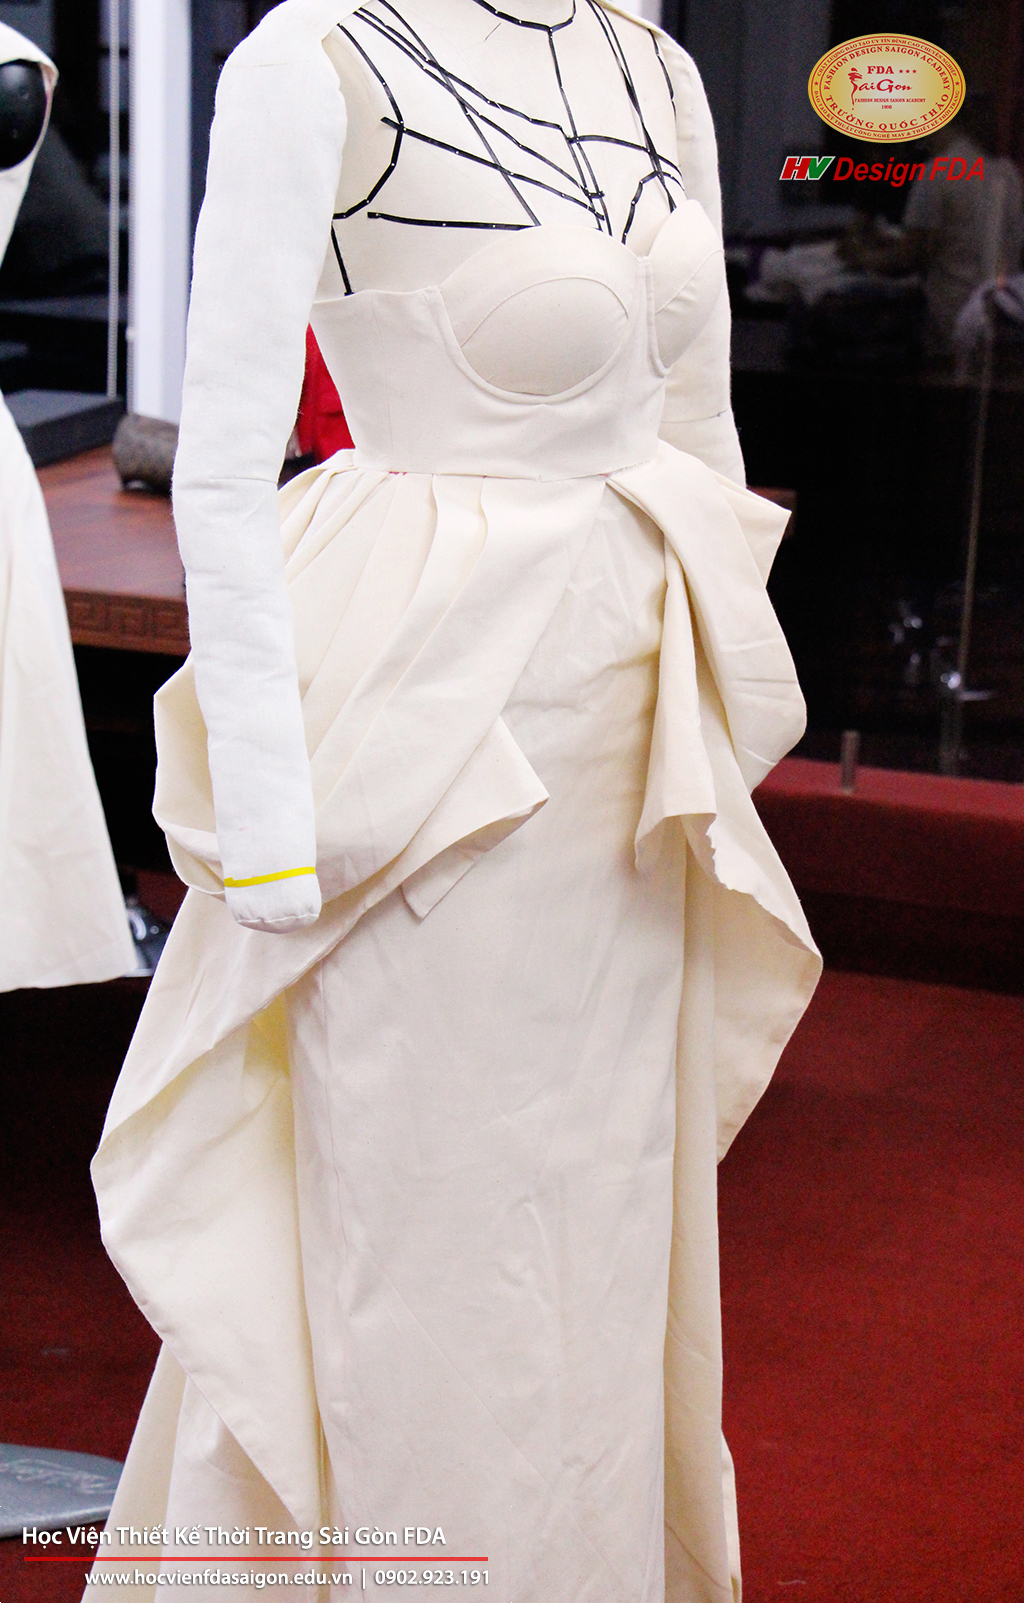 Fashion draping Thiết kế rập thời trang 3D trên Mannequin